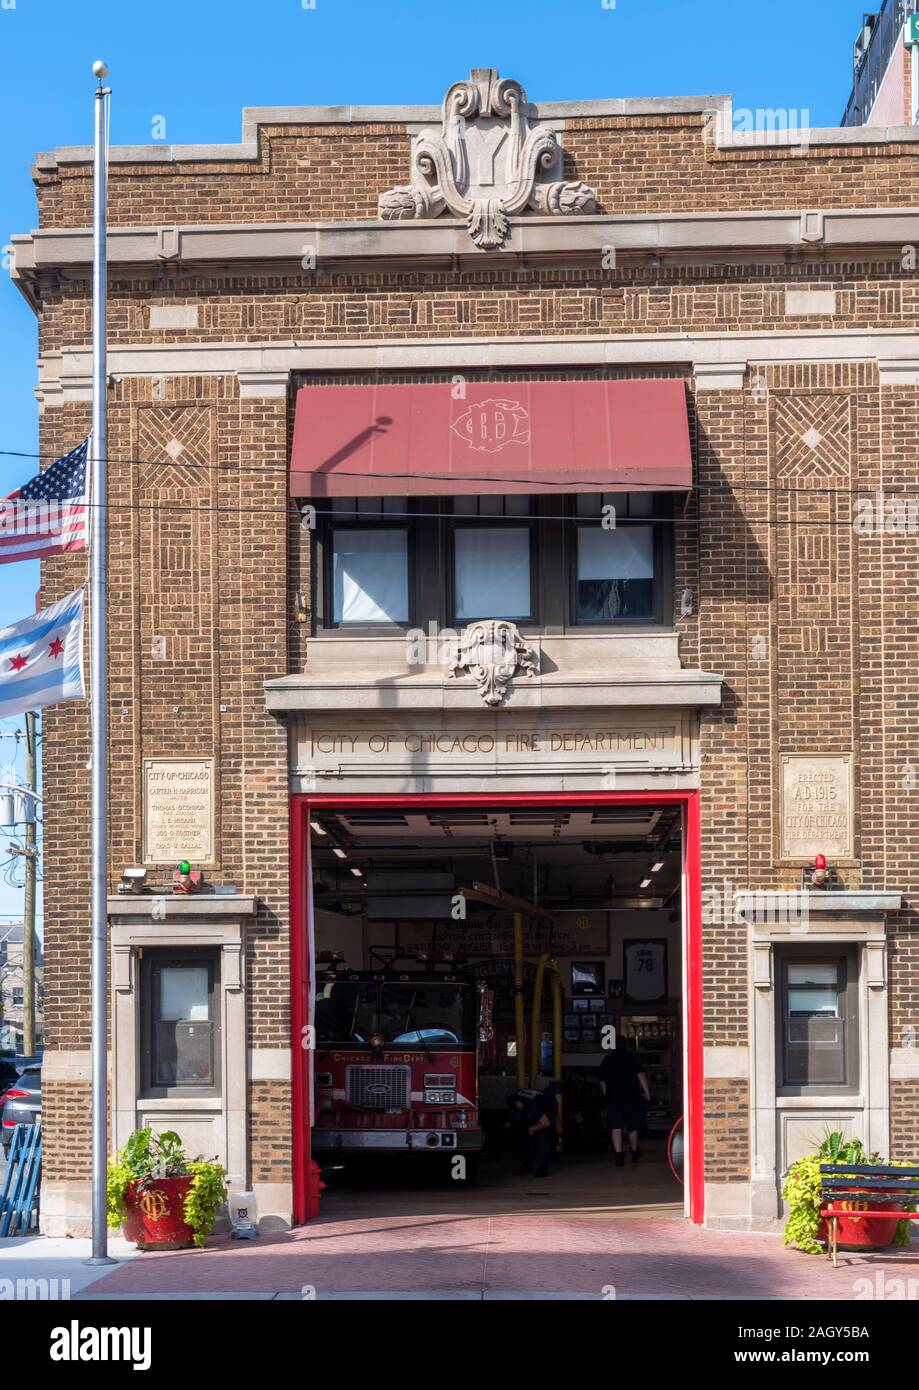 Ville de Chicago Fire Department fire station en dehors de Wrigley Field Baseball Park, Chicago, Illinois, États-Unis Banque D'Images